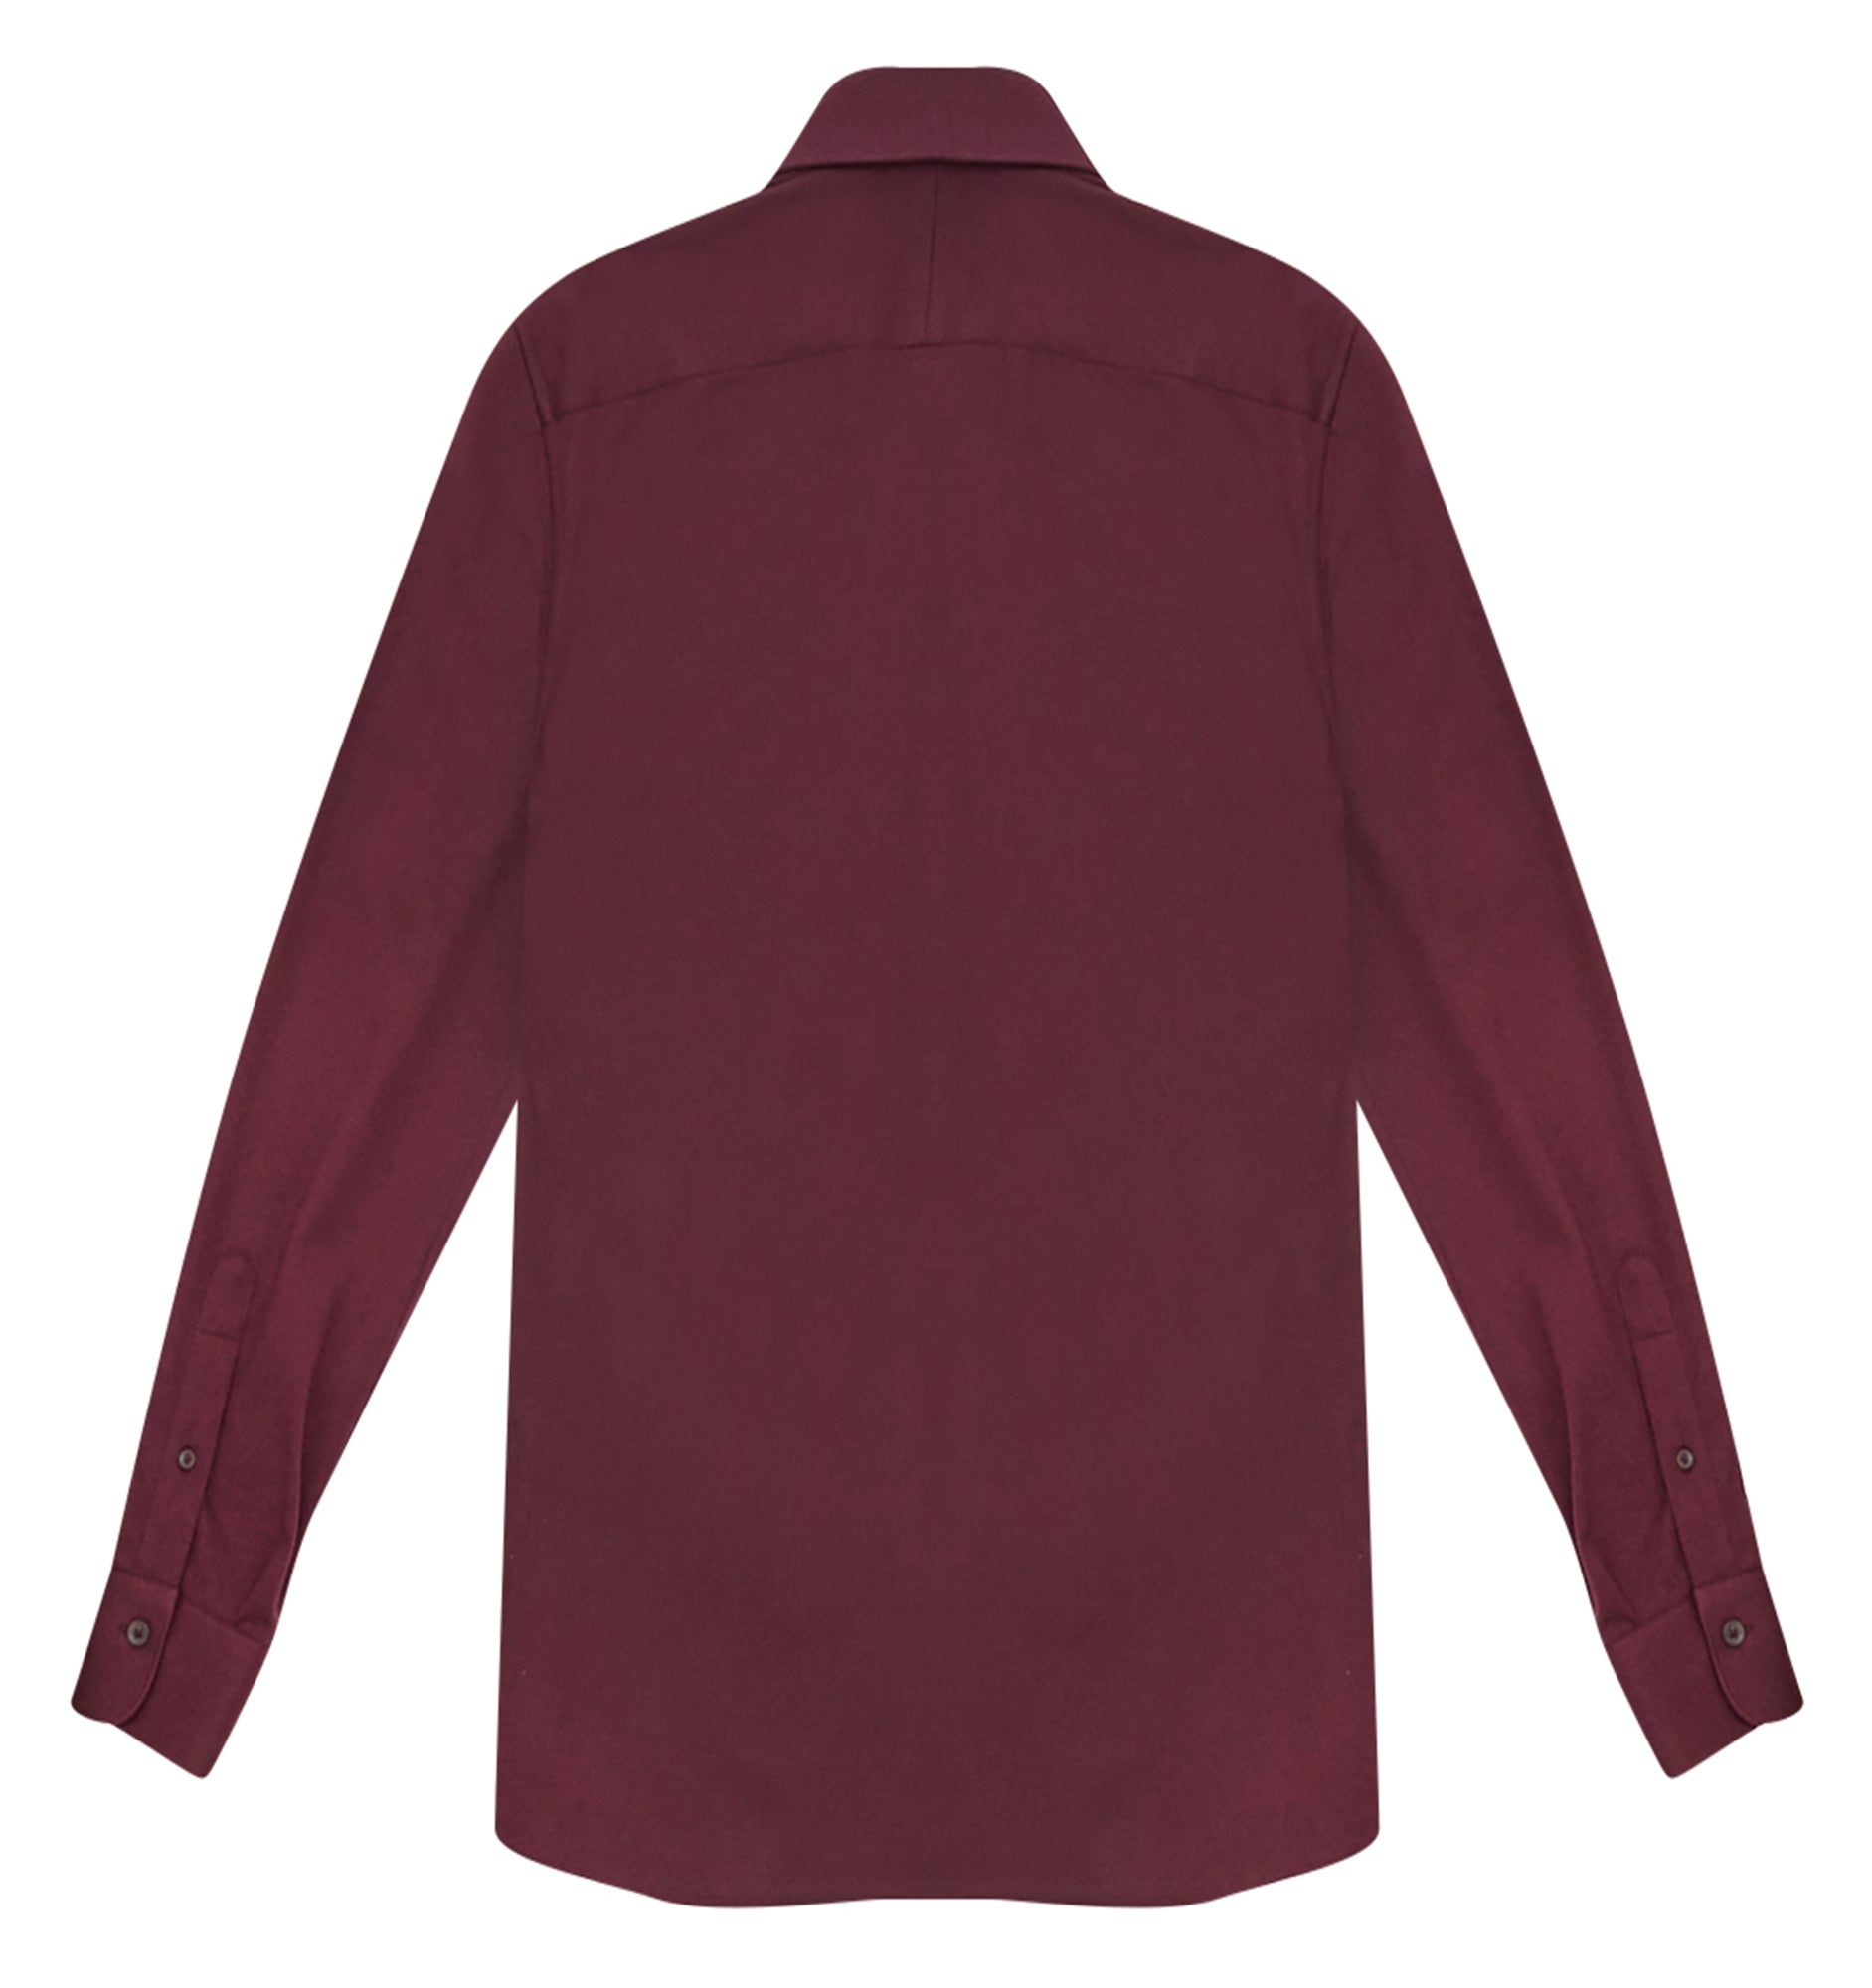 Sangria Pique Cotton Long Sleeve Polo Shirt